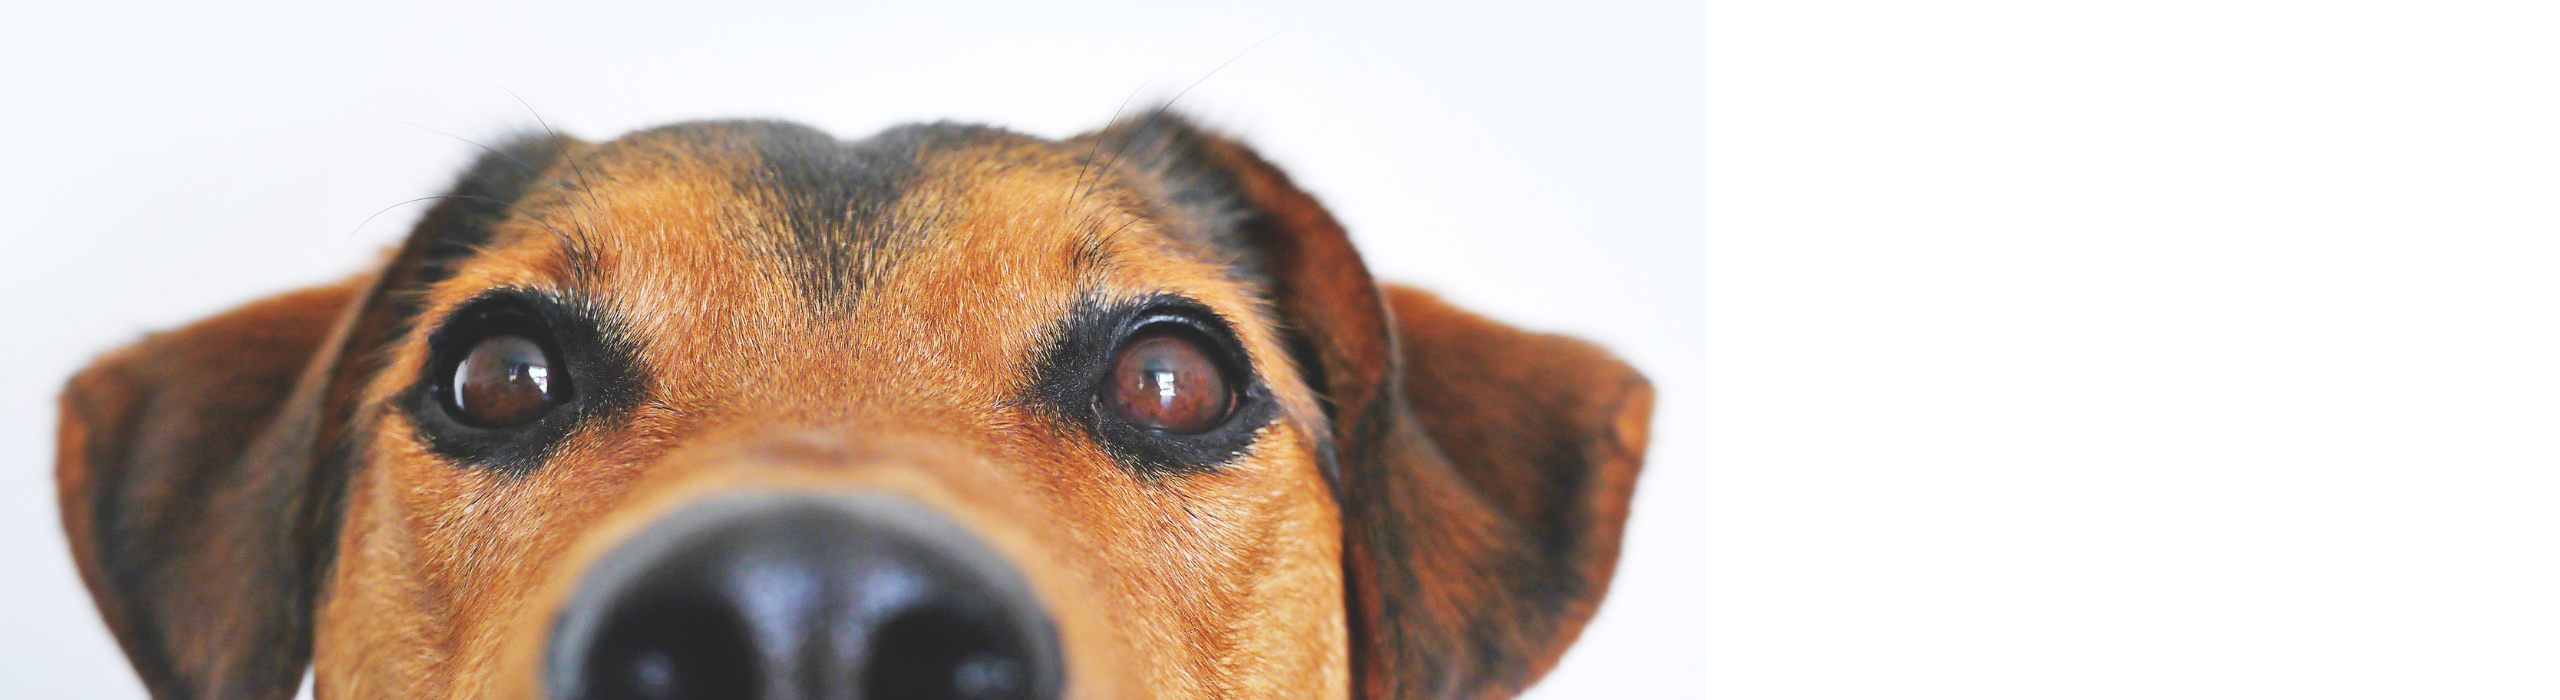 Dragen knuffelbare honden bij aan serieuze doestellingen?